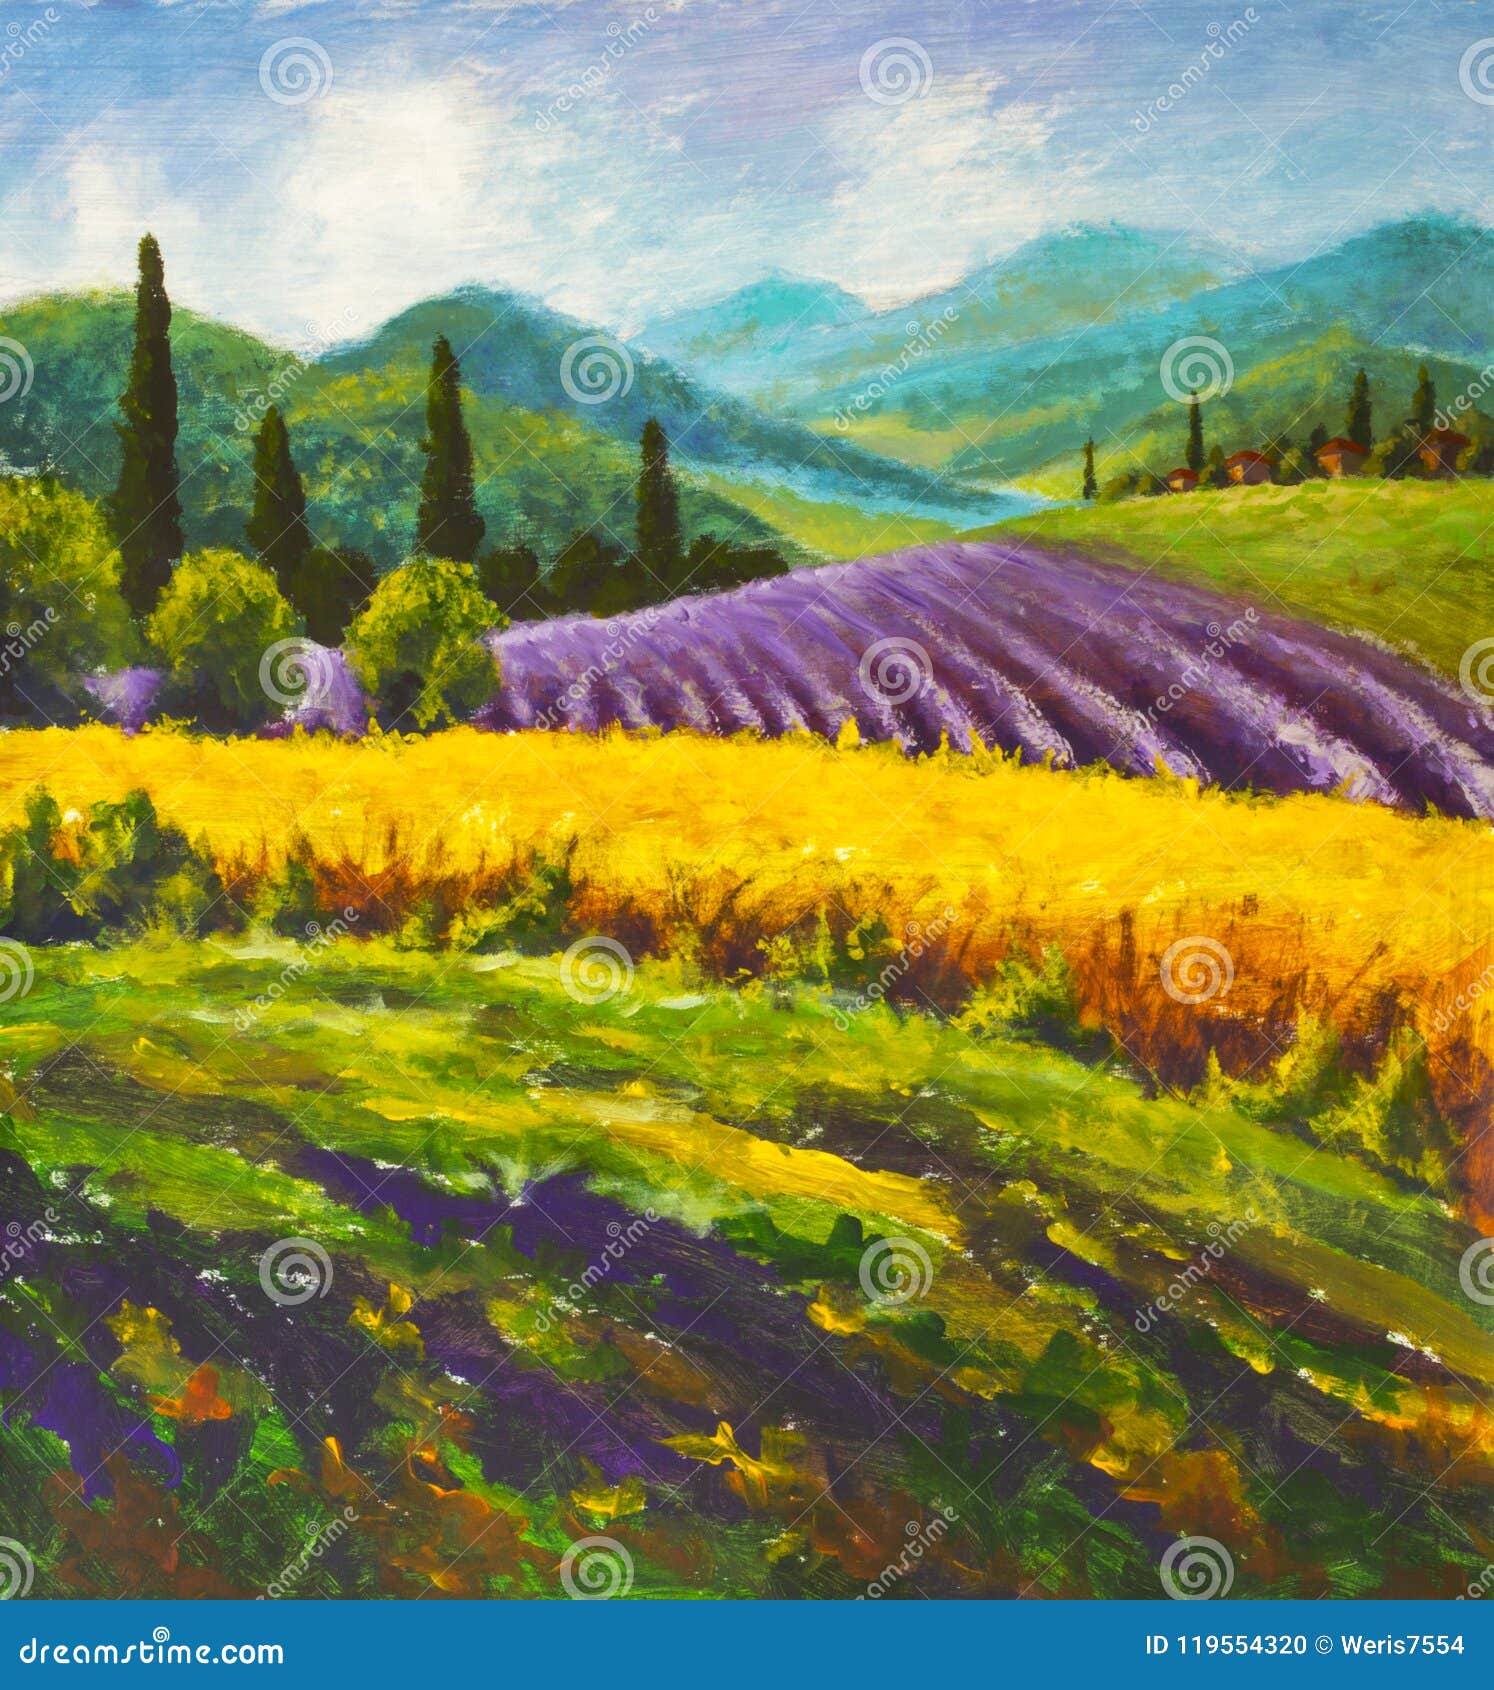 Tuscany Painting Lavender Original Art Landscape OIl Artwork Violet Flowers Artwork